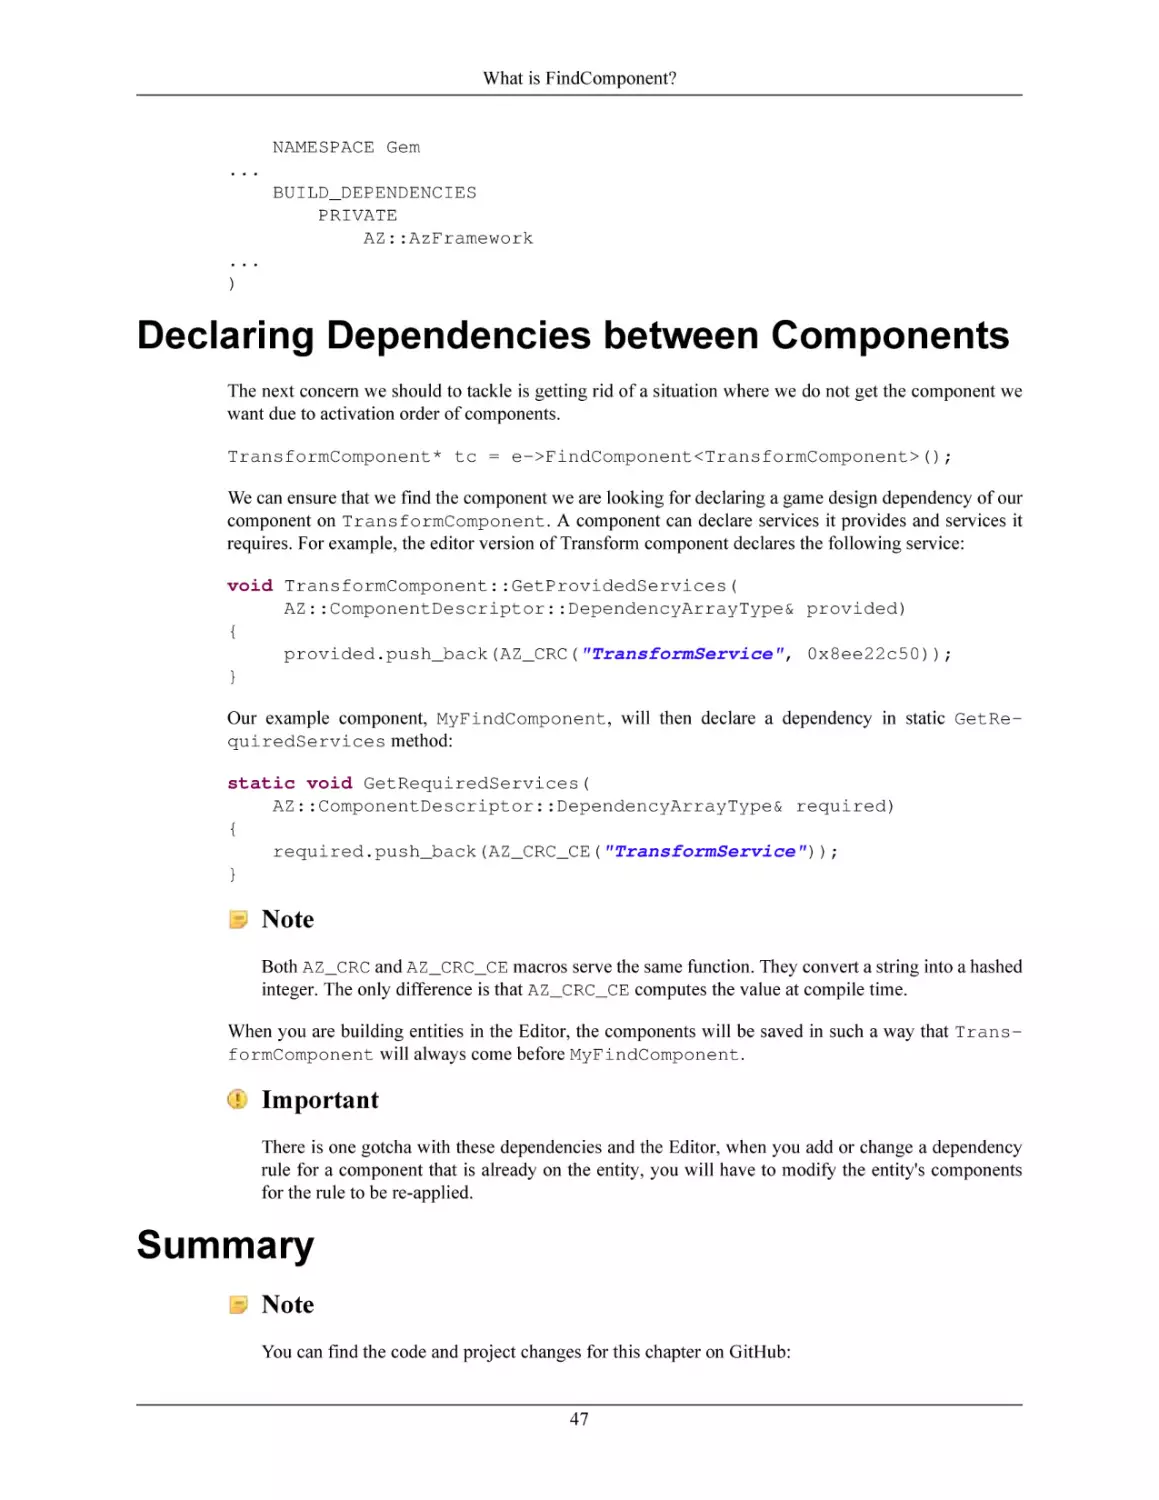 Declaring Dependencies between Components
Summary